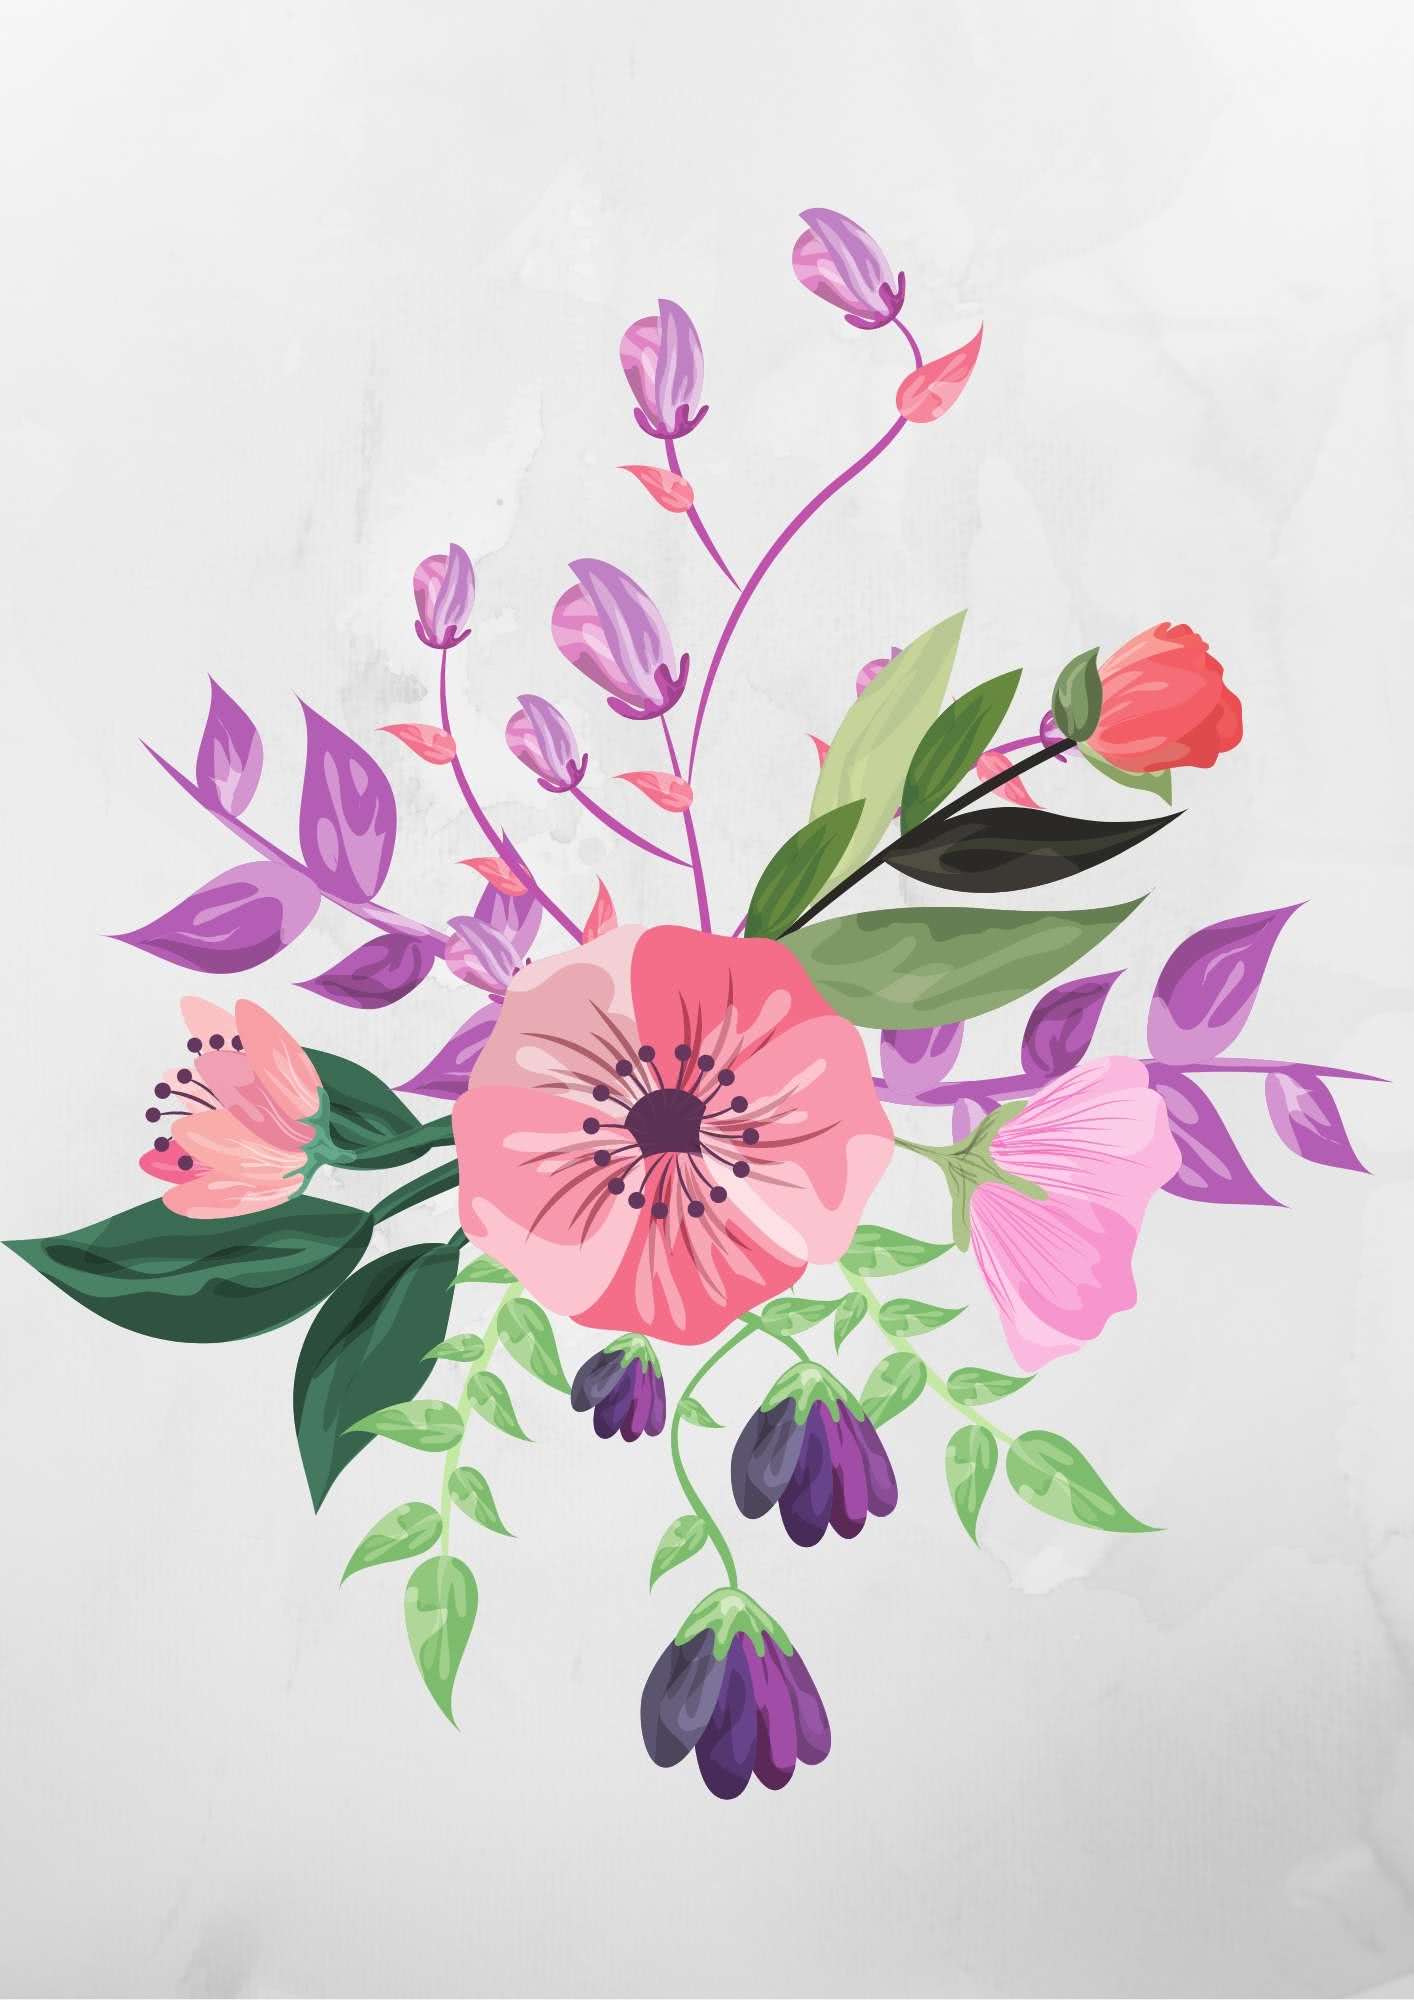 quadro de flores para imprimir